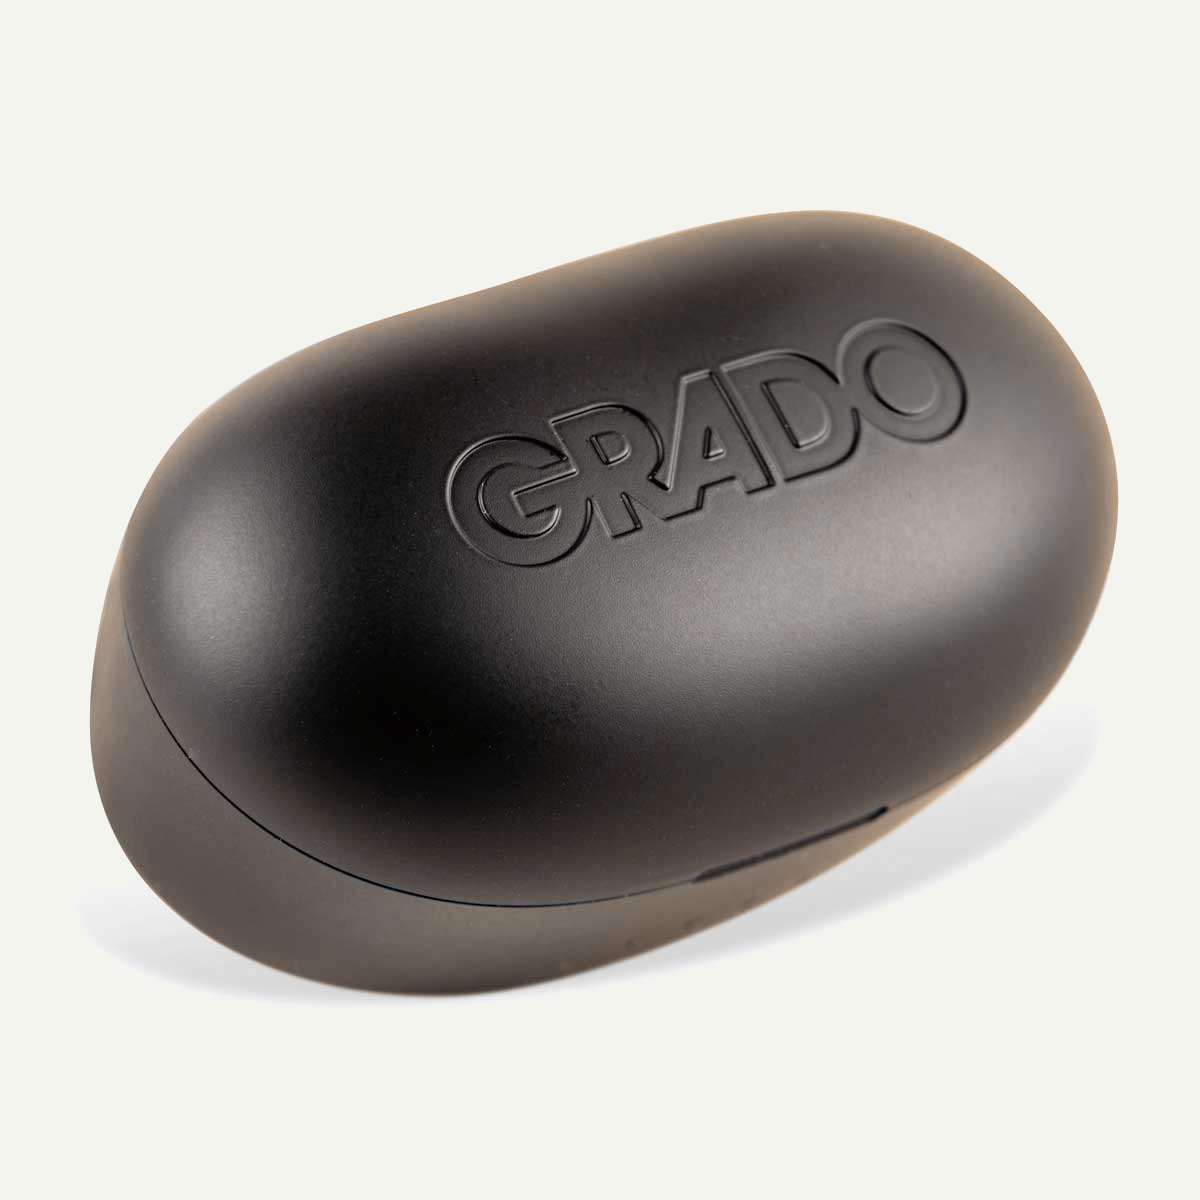 Grado GT220 True Wireless